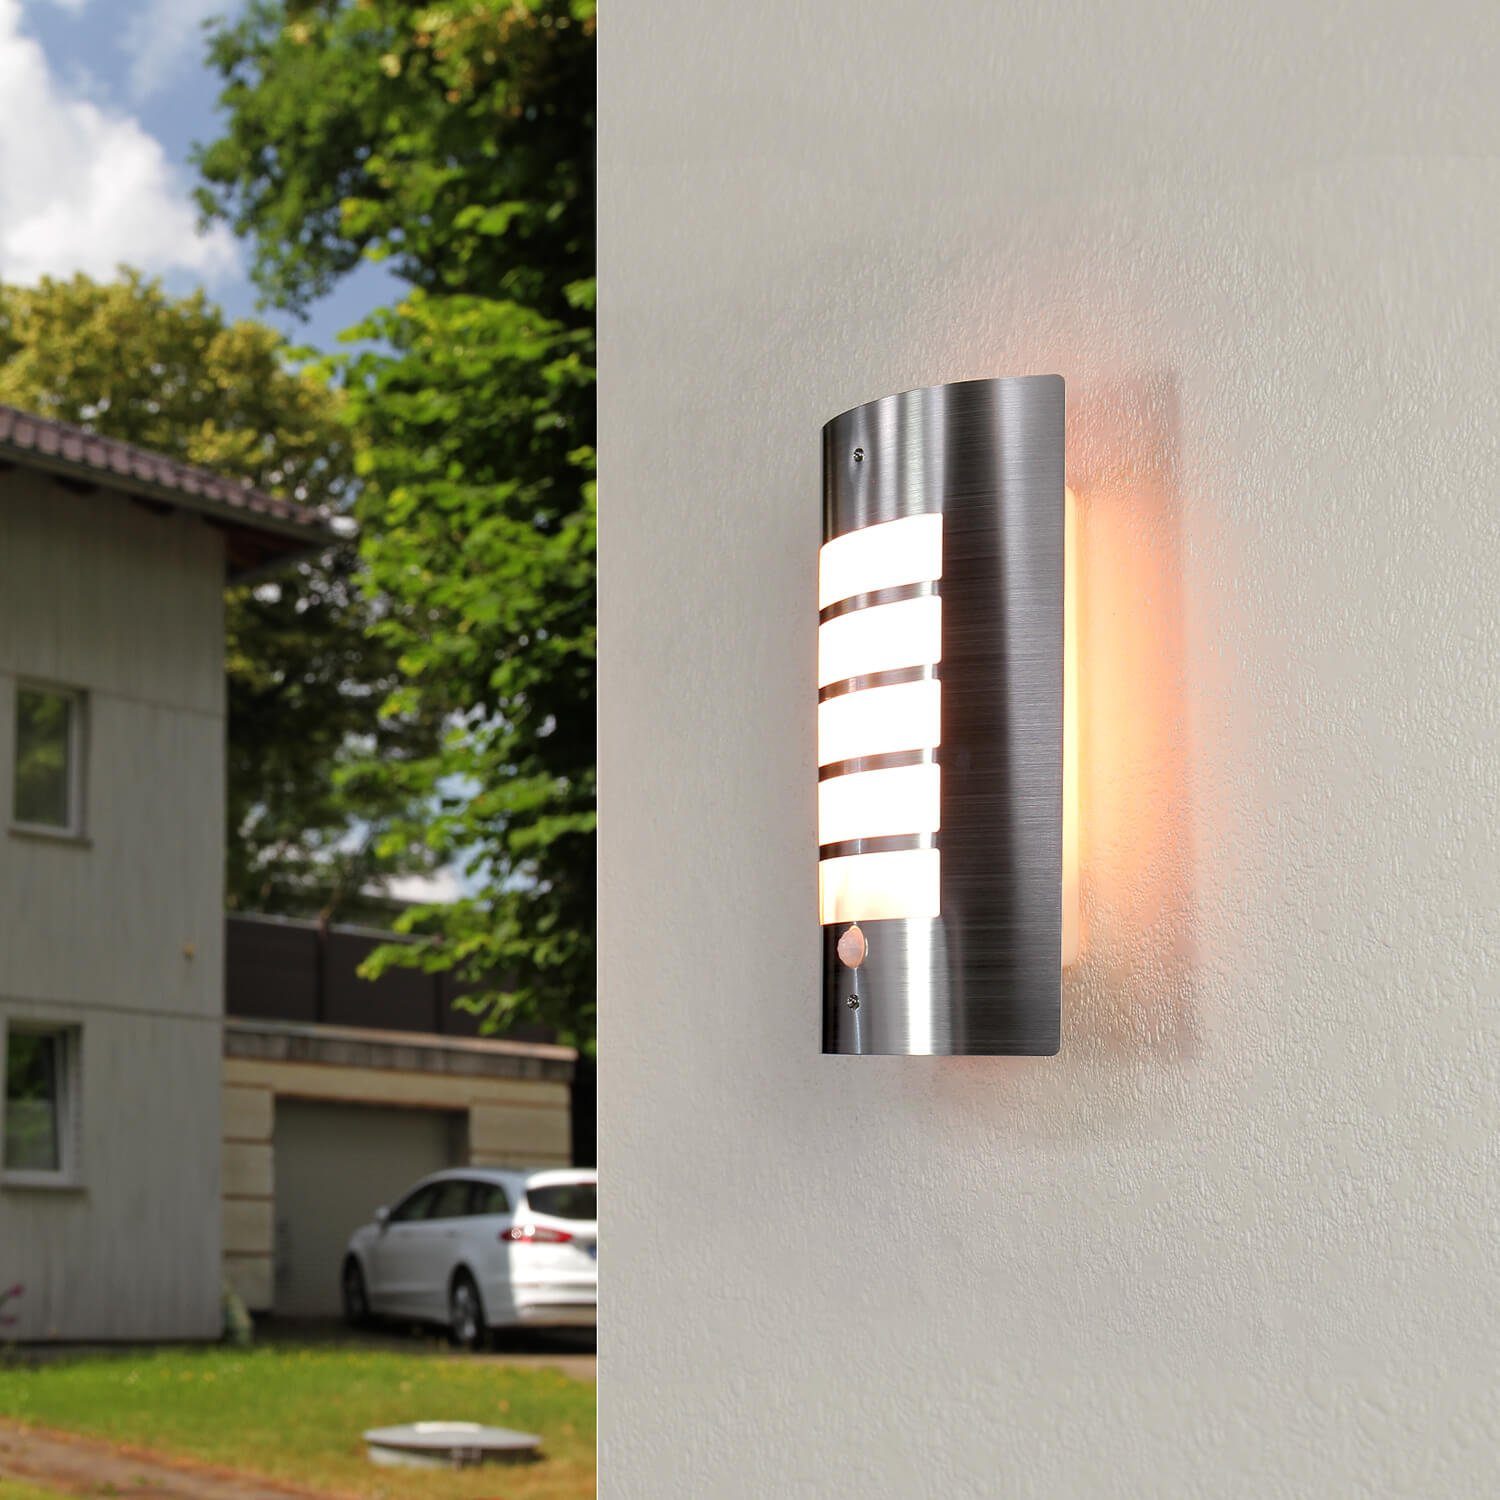 LED Edelstahl Wand Lampe Haus-Tür Leuchte mit Bewegungsmelder Sensor Nacht Licht 